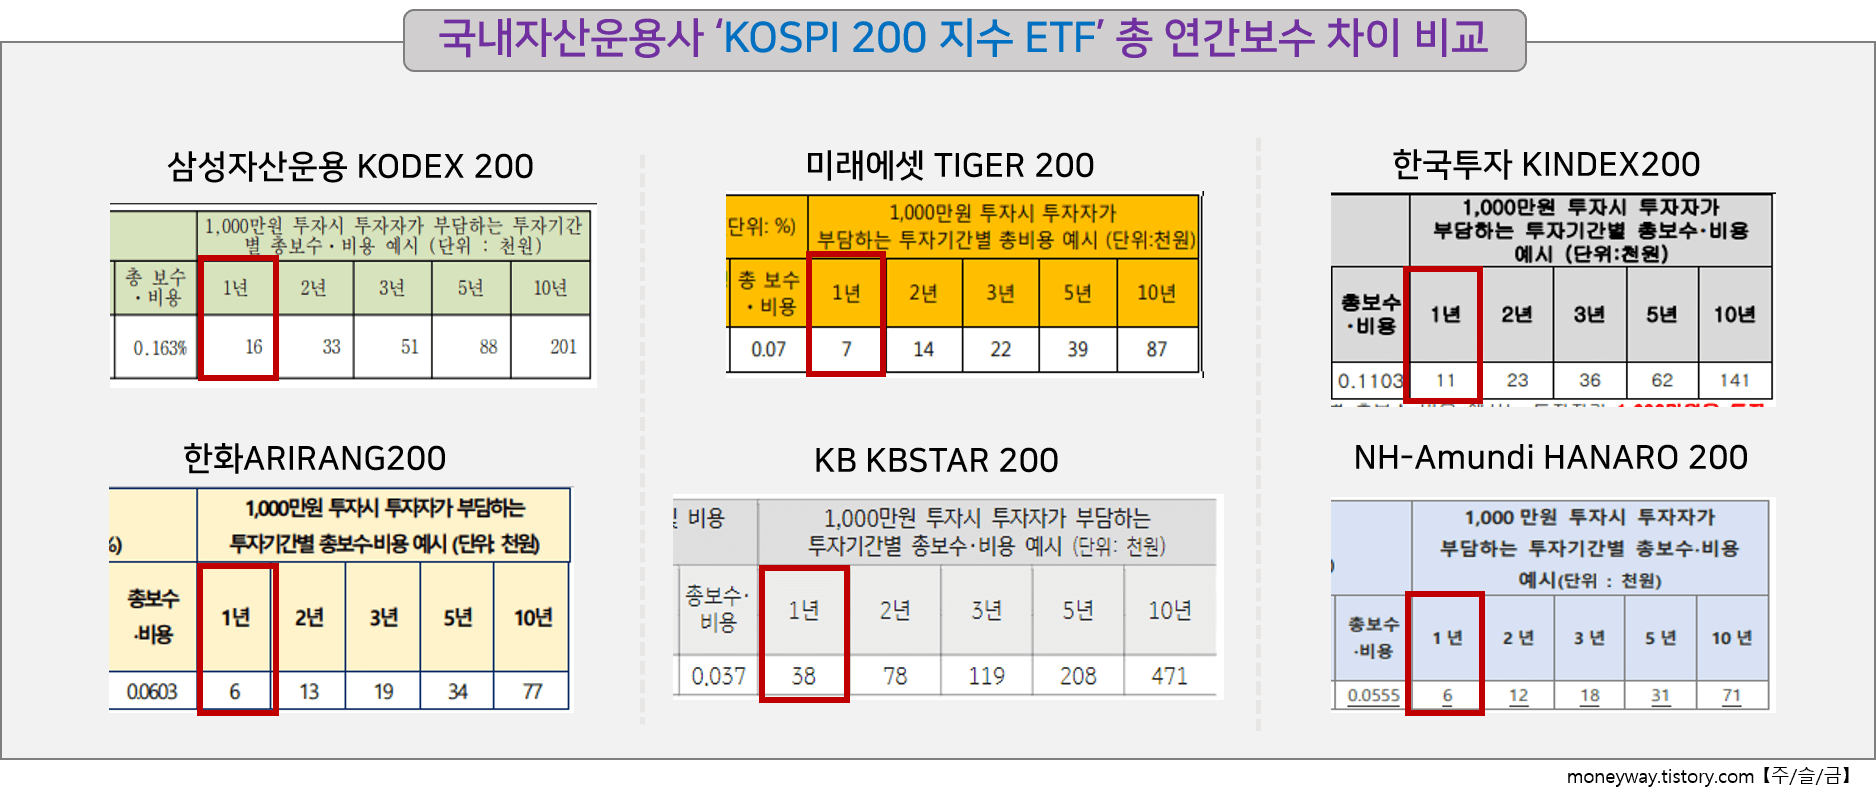 국내자산운용사 &lsquo;KOSPI200 ETF&rsquo; 총 연간보수 차이 비교